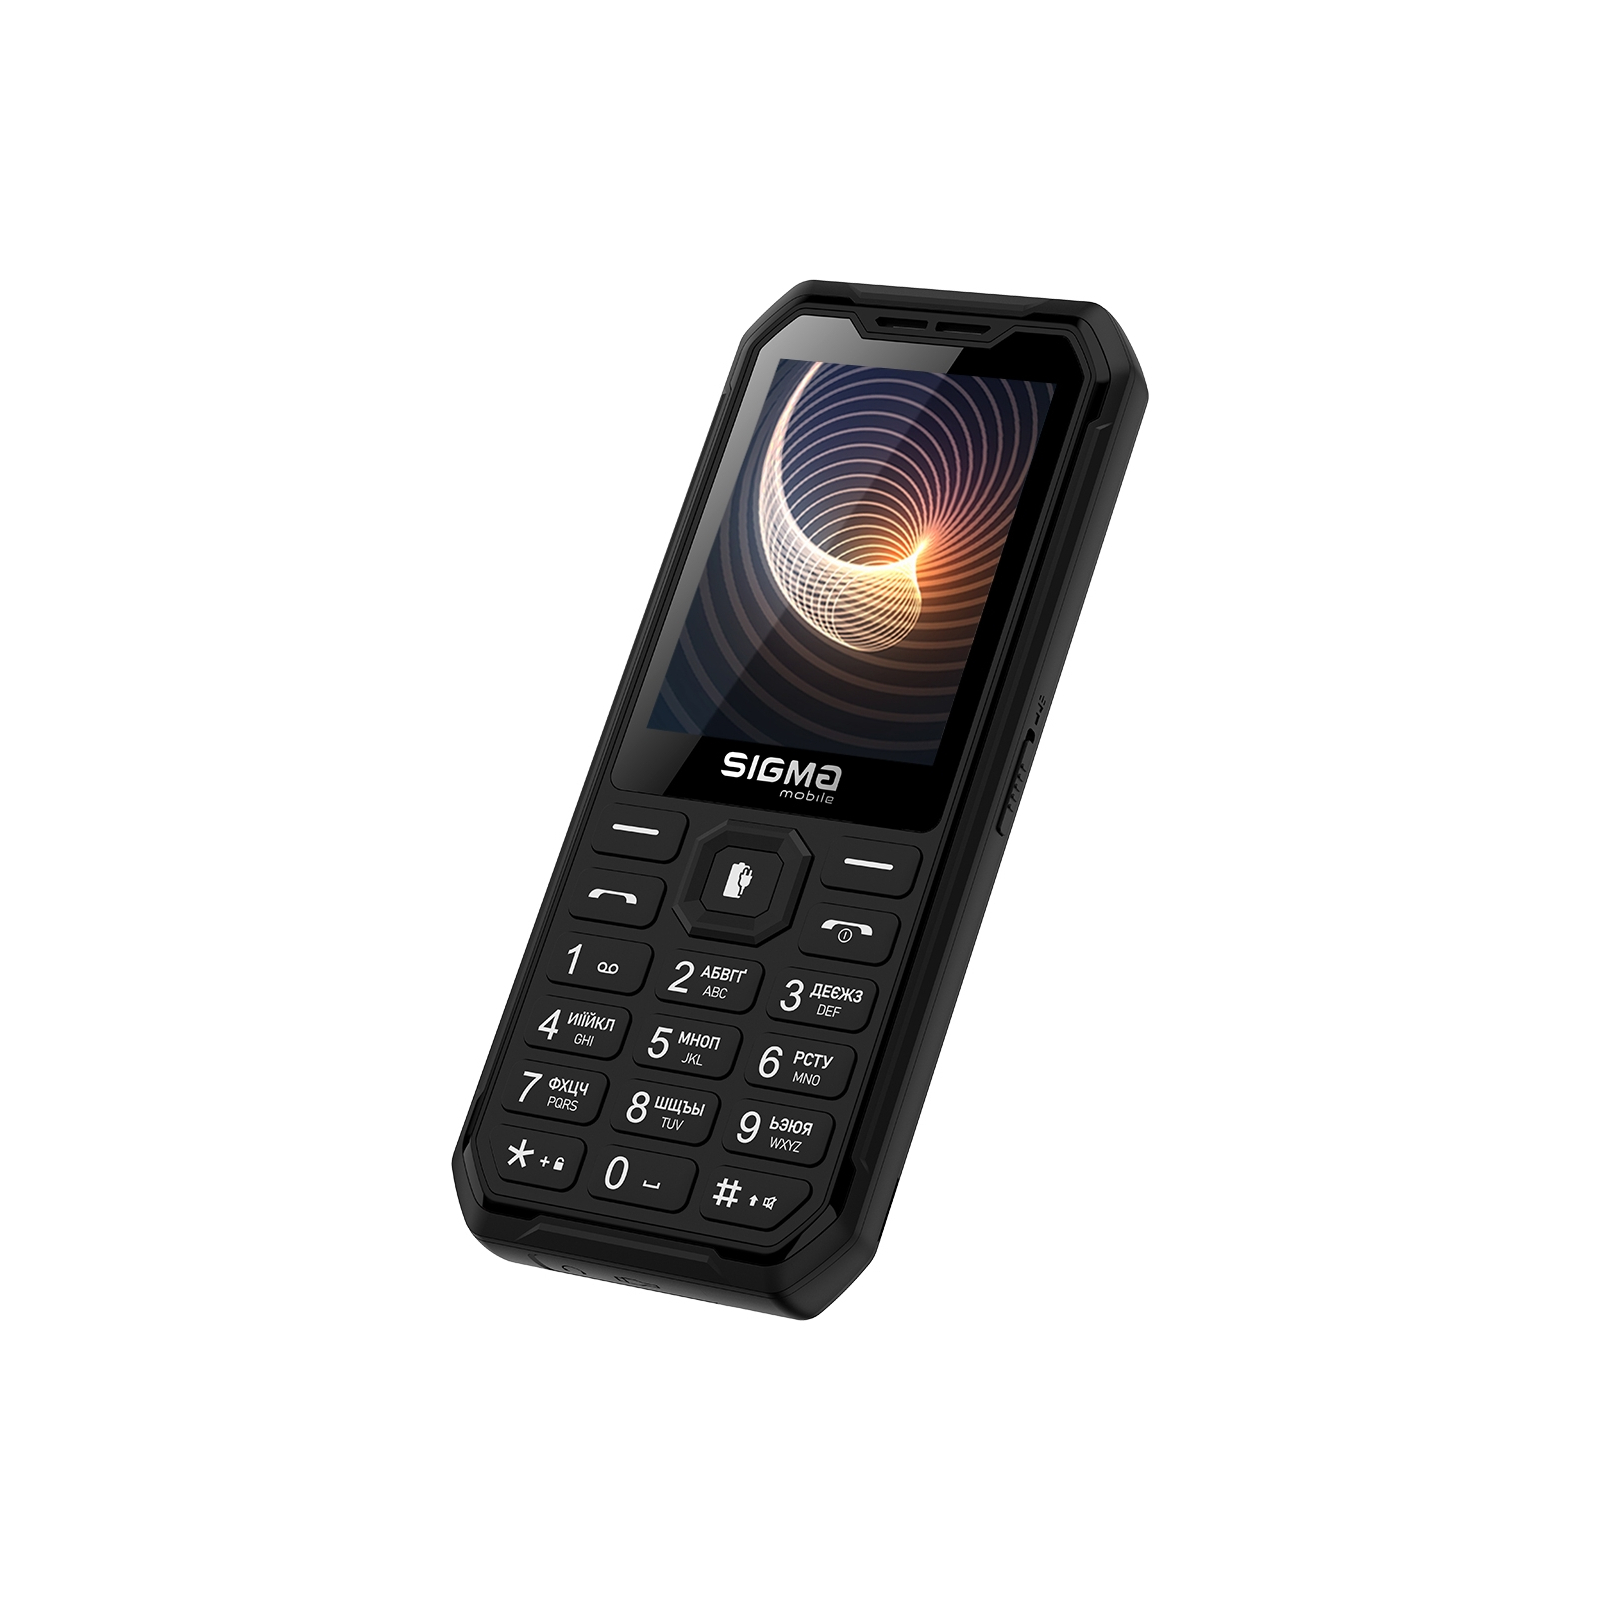 Мобильный телефон Sigma X-style 310 Force Type-C Black Orange (4827798855126) изображение 3